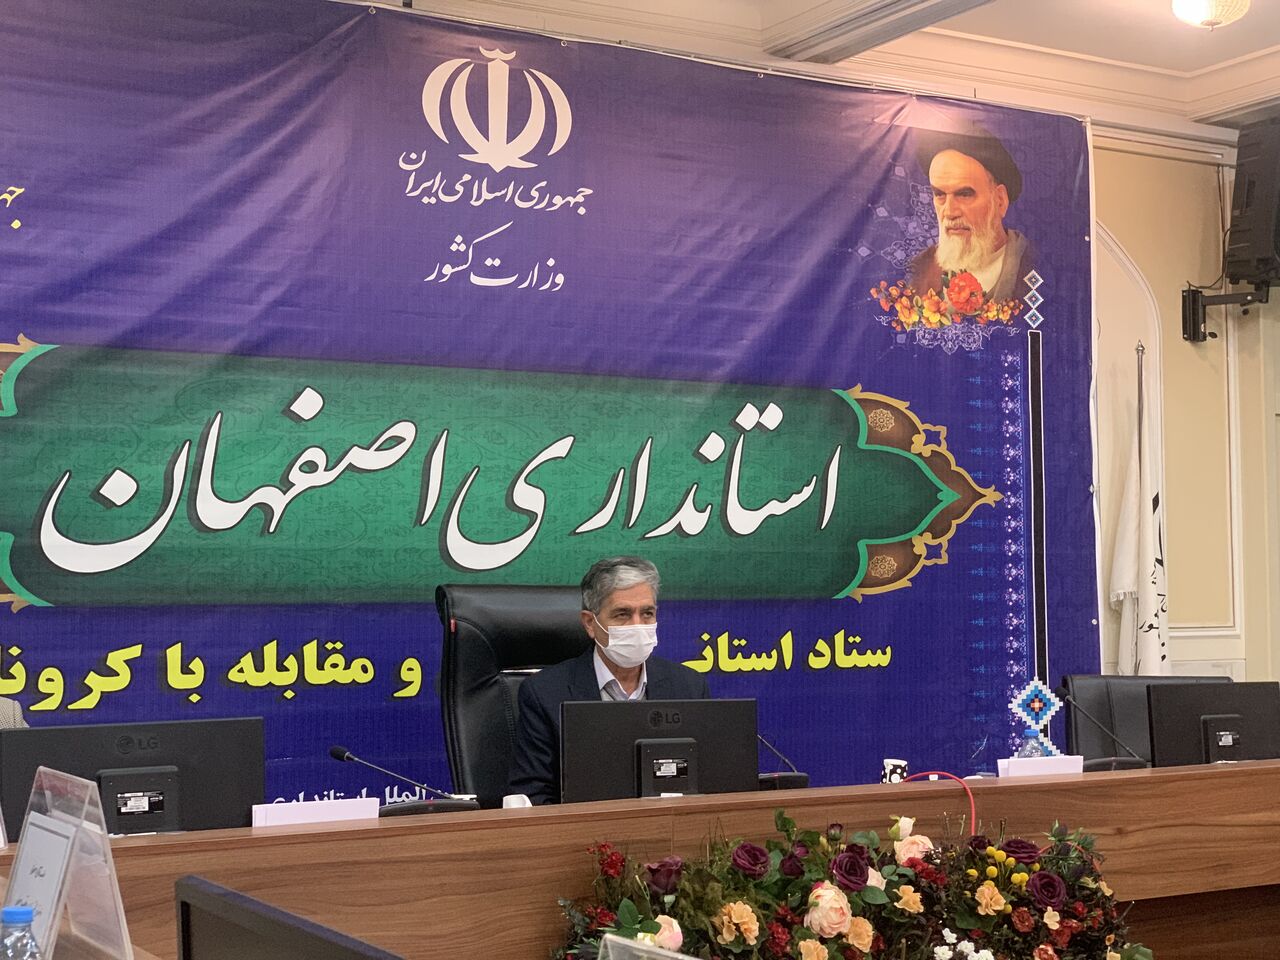 فعال شدن ادارات اصفهان به سامانه ماسک اجباری است